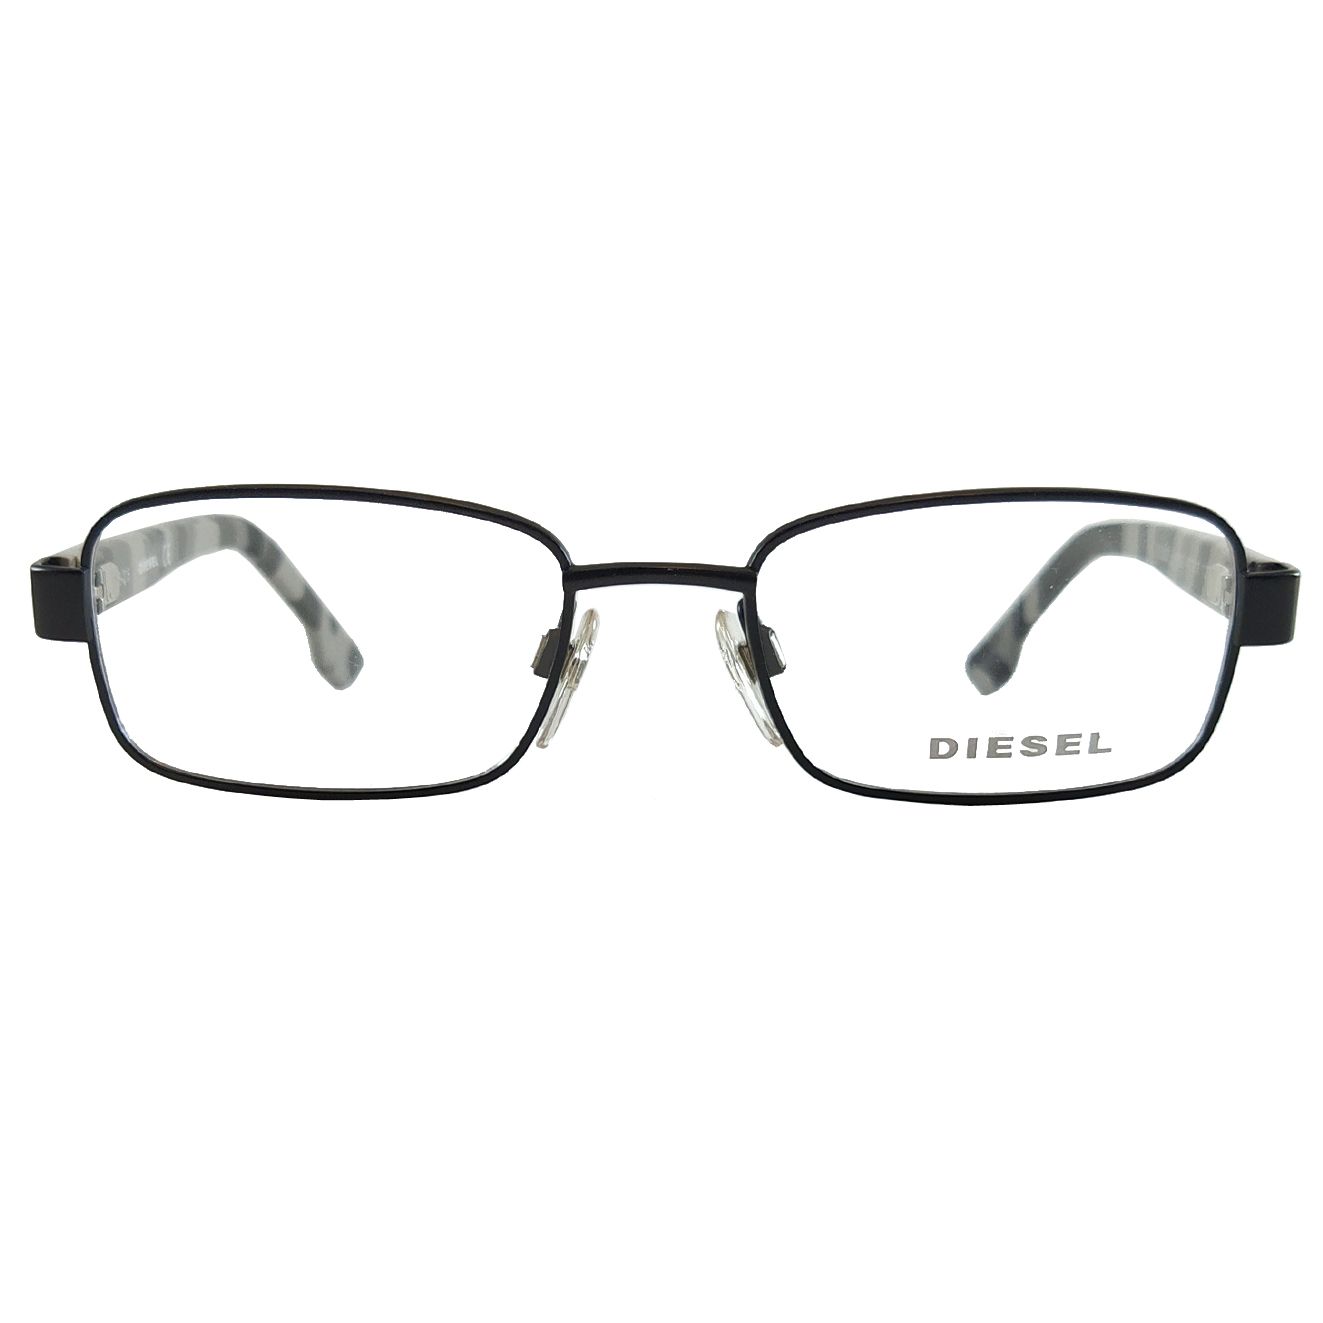 فریم عینک طبی بچگانه دیزل مدل DL522700247 -  - 1